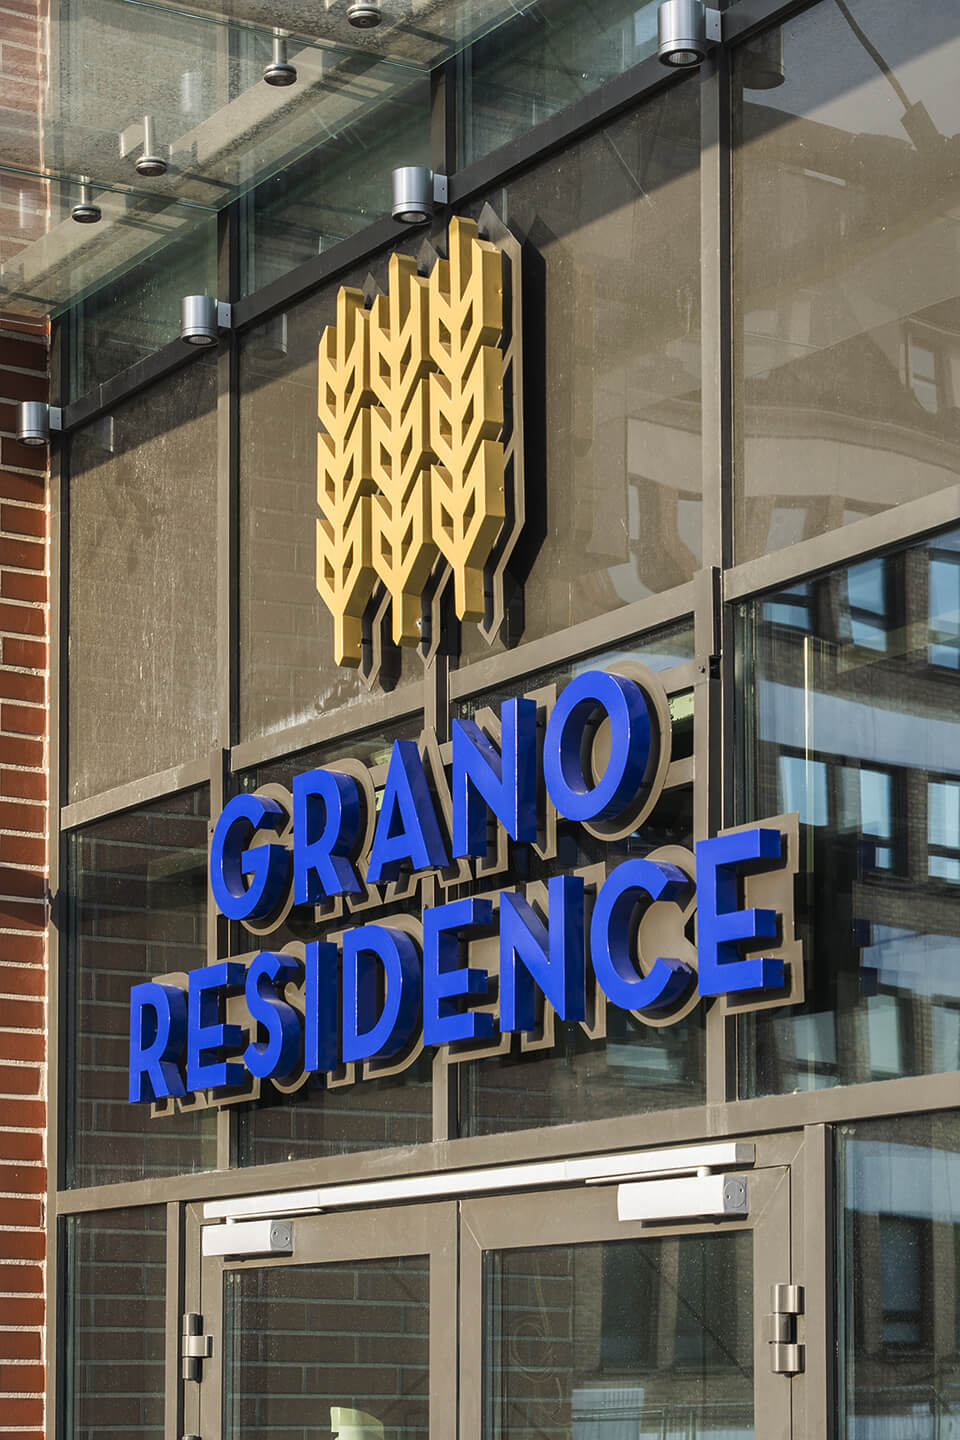 grano residence hotel apartments apartamenty - grano-residence-litery-przestrzenne-podswietlane-tyłem-niebieskie-litery-nad-wejsciem-do-hotelu-litery-mocowane-na-kaflach-litery-na-stelazu-logo-firmowe-3d-gdansk